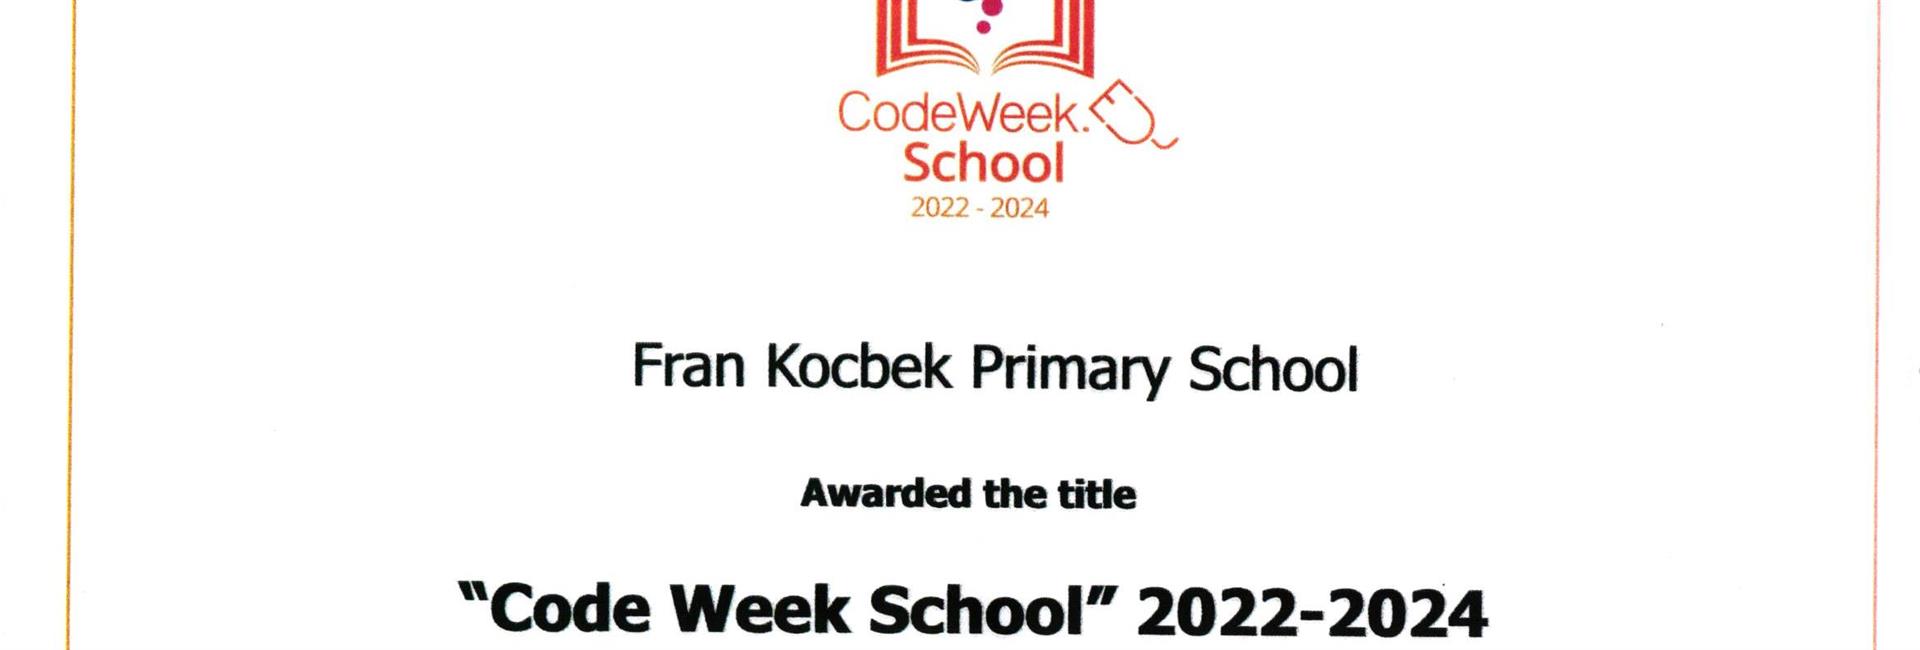 CODE WEEK SCHOOL 2022-2024